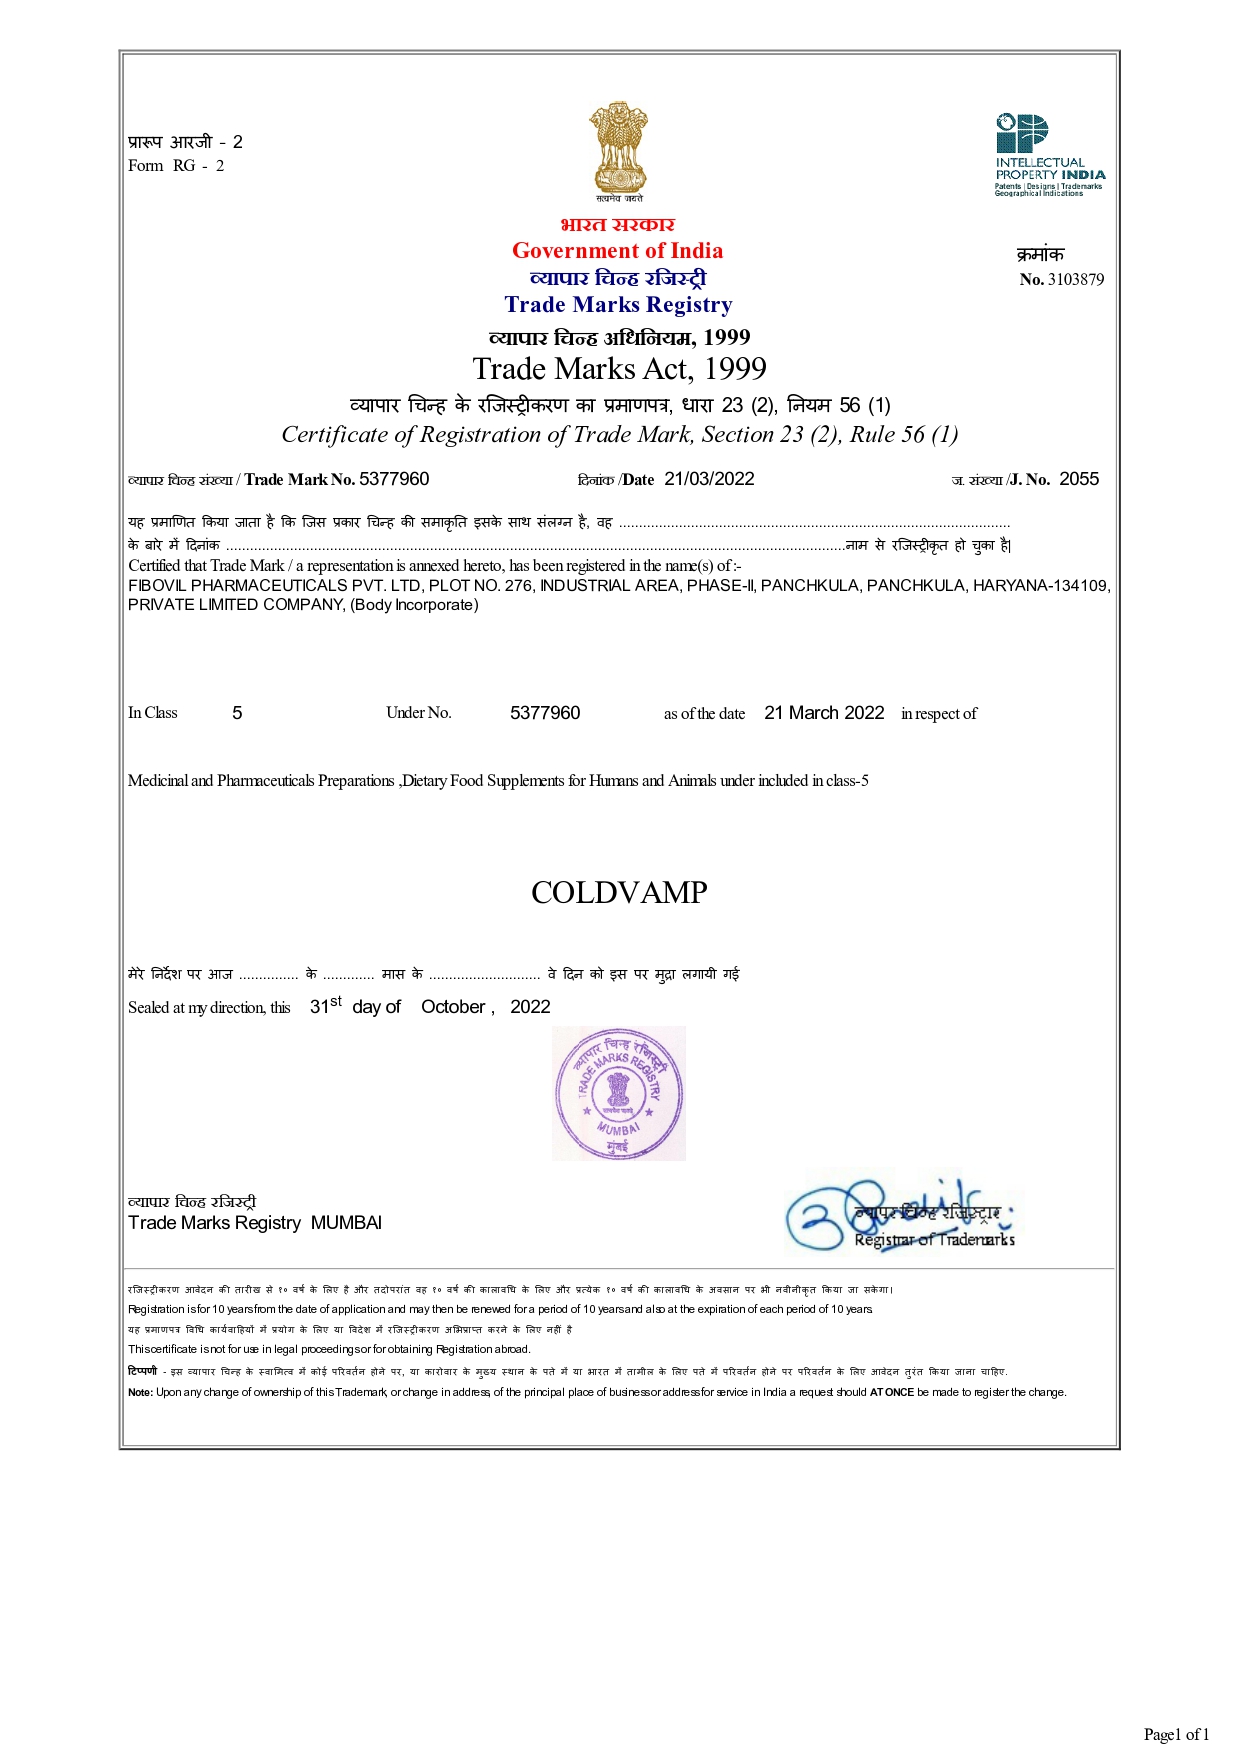 Registered Certificate of COLDVAMP